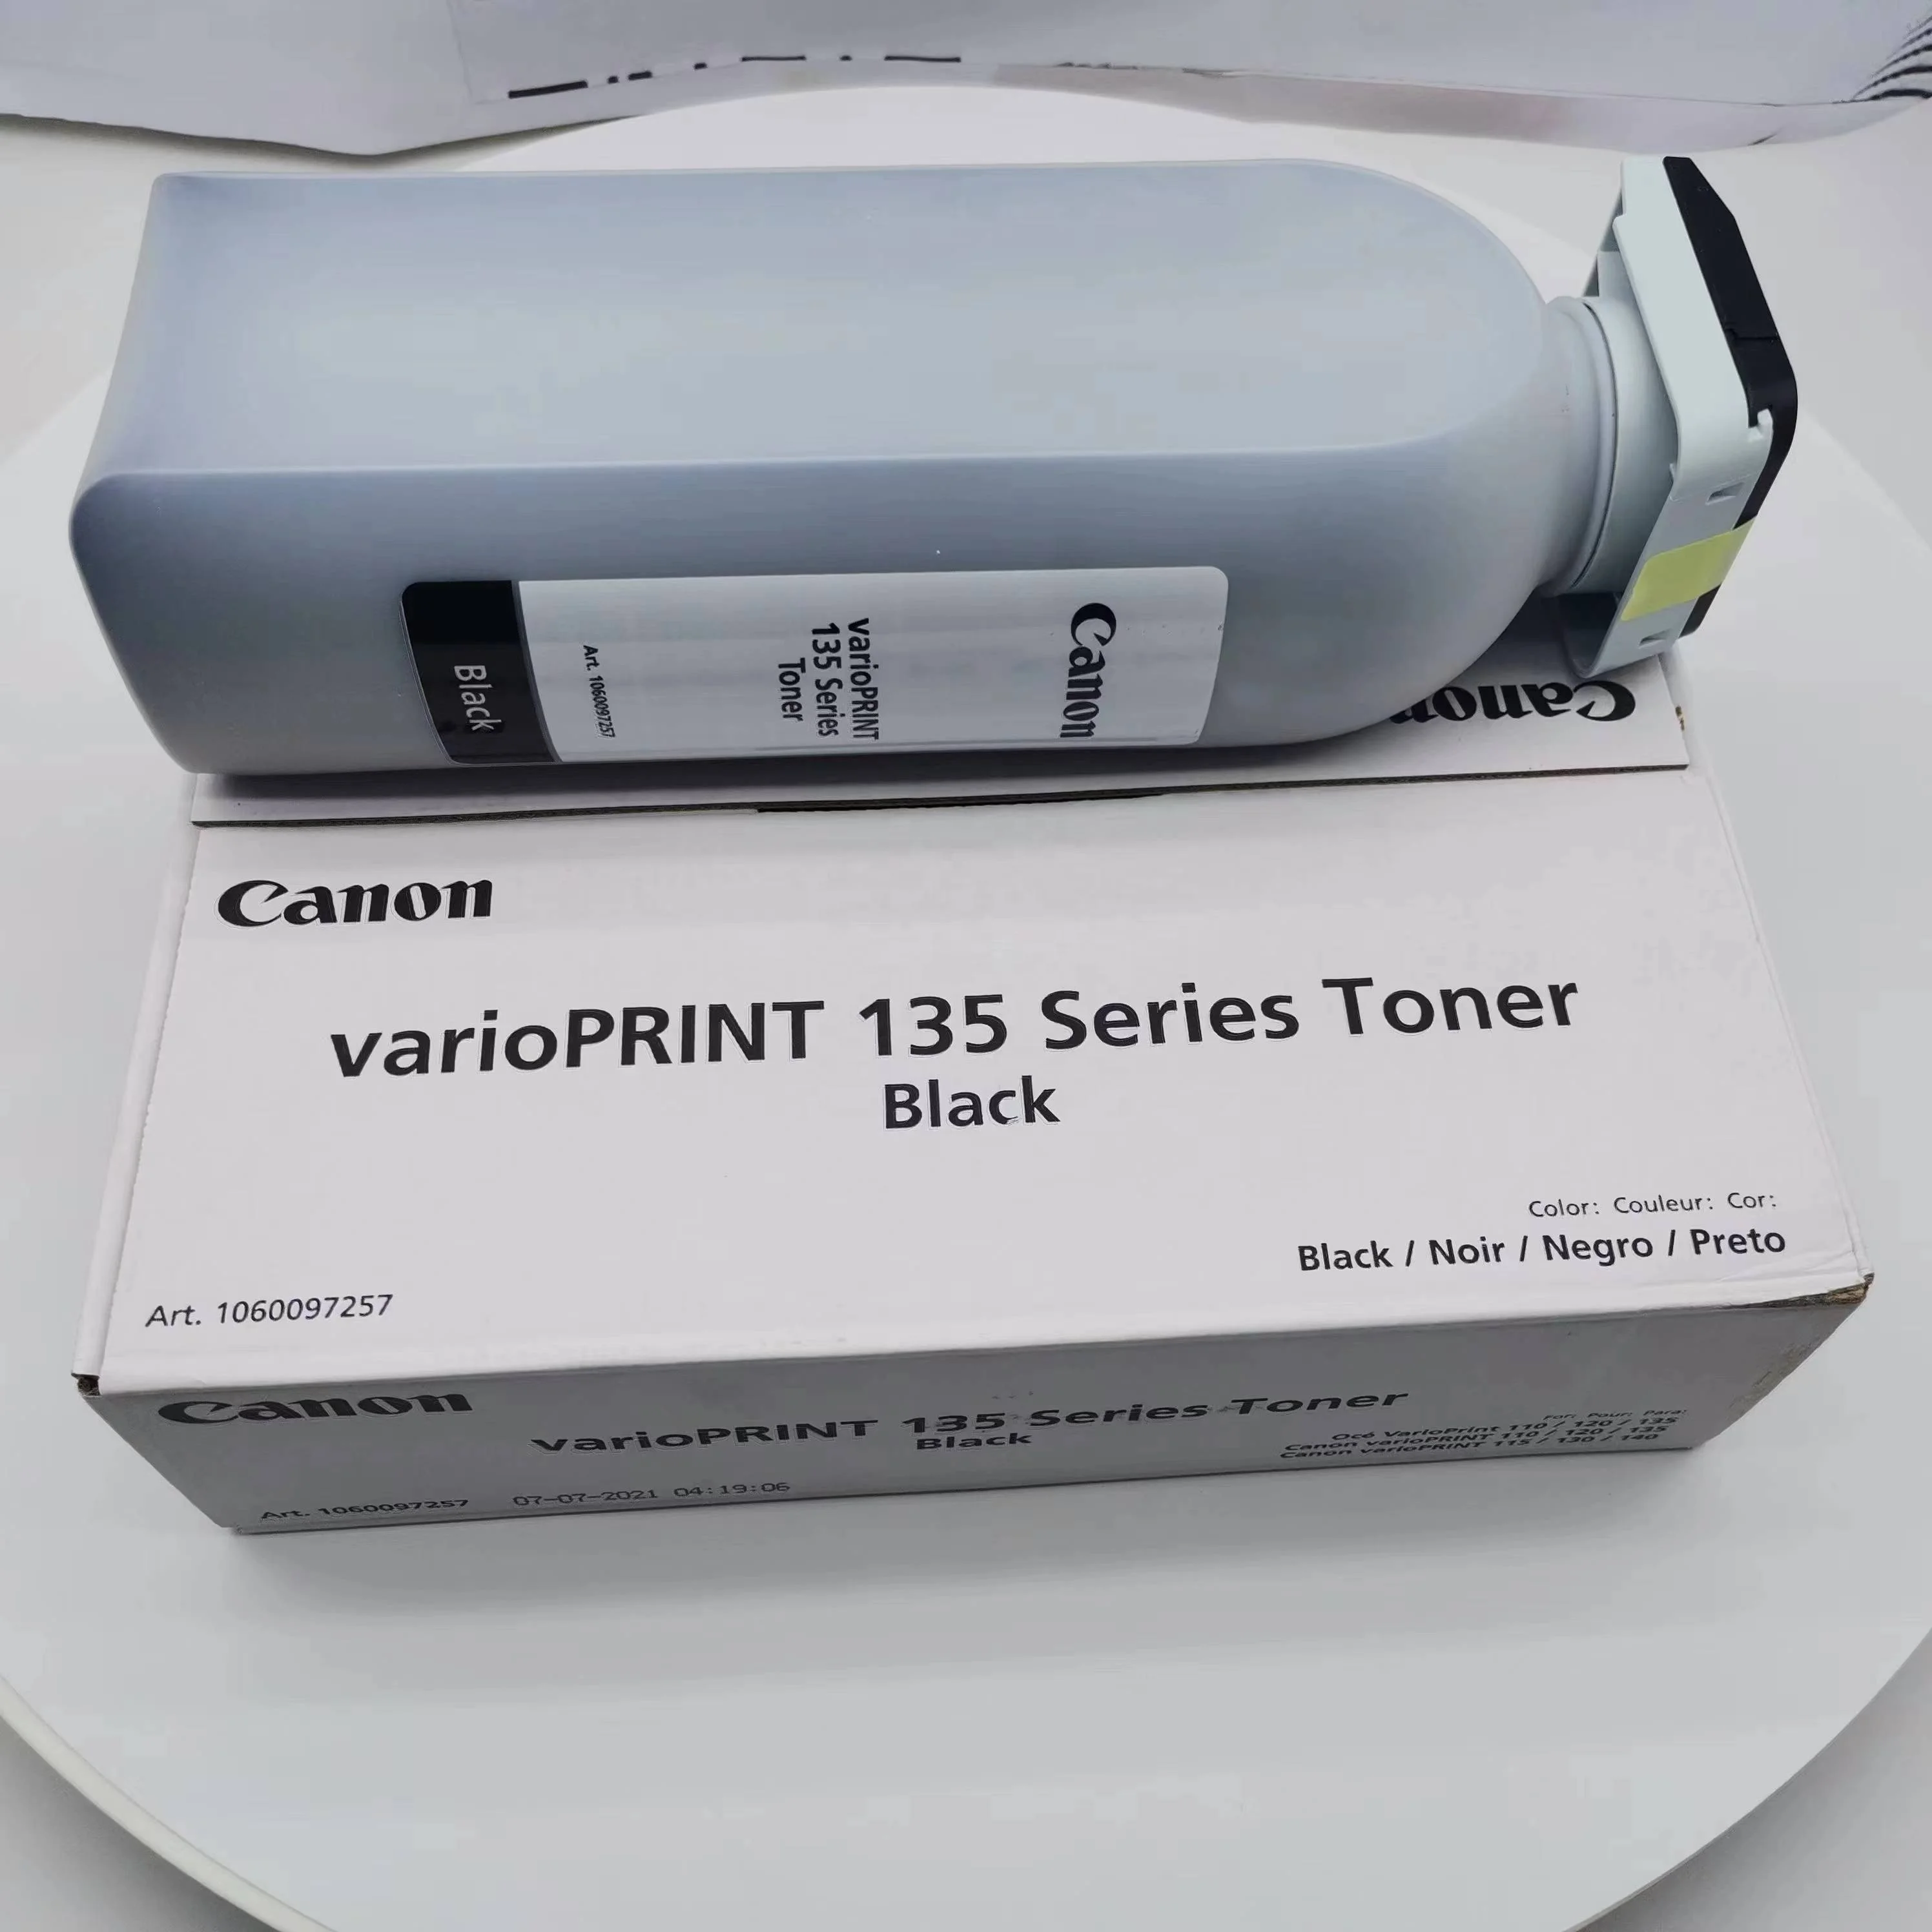 Genuine Toner for use in  OCE varioPRINT 135 DP135 1060097257